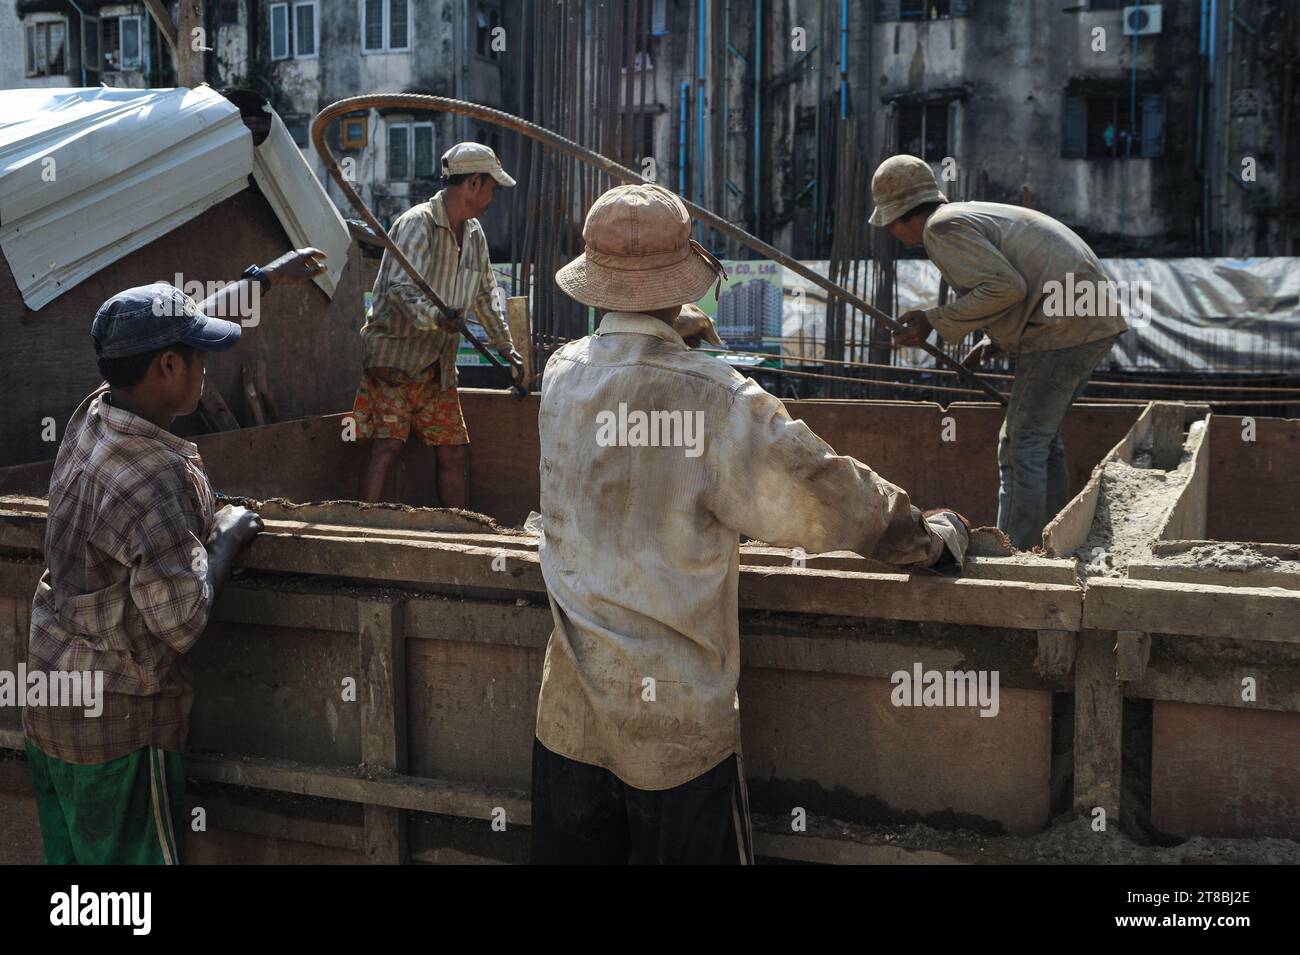 01.10.2013, Yangon, Myanmar, Asien - Arbeiter arbeiten auf einer Baustelle im Zentrum der ehemaligen Hauptstadt Rangoon. Stockfoto